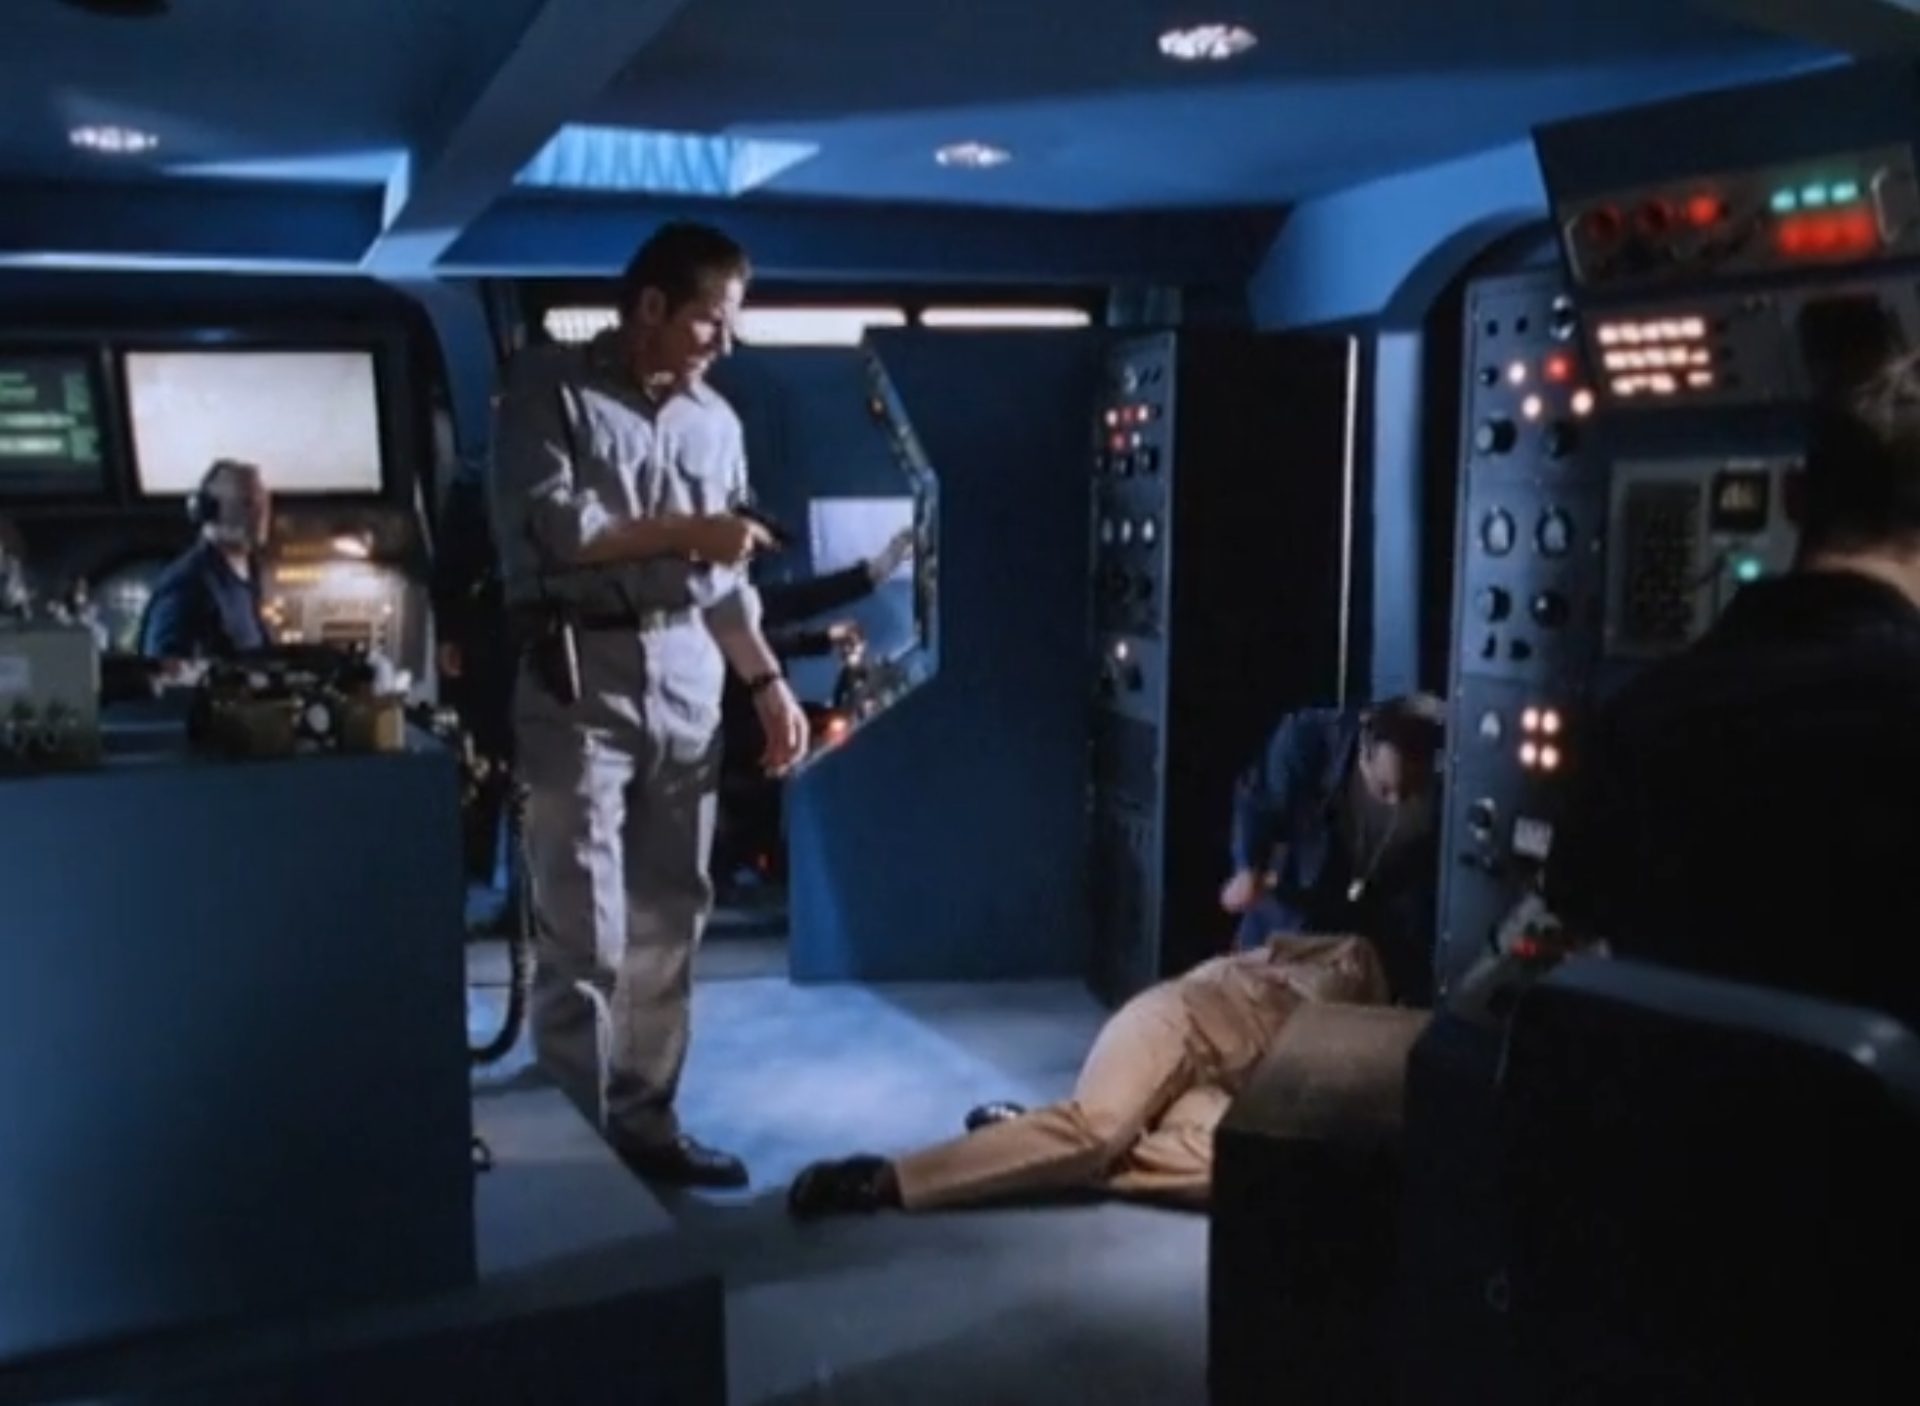 Hijacker in der Kommandozentrale des entführten U-Bootes, am Boden liegt jemand, hinter ihm steht einer der Kriminellen mit Pistole.